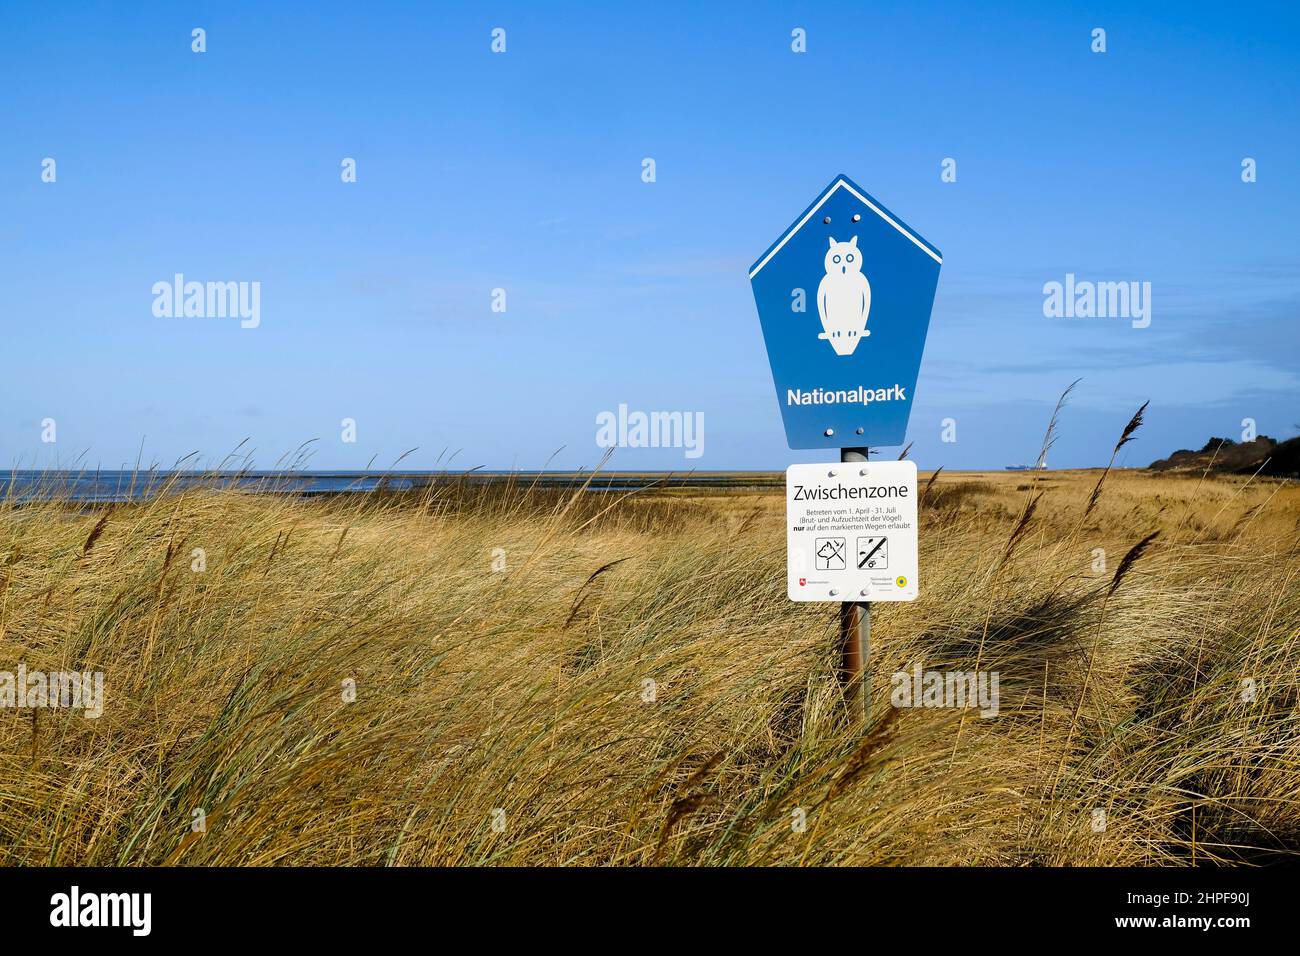 11.02.2022, Cuxhaven, Niedersachsen, Deutschland - Schilder im Nationalpark Wattenmeer im Stadtgebiet von Cuxhaven weisen auf die sogenannte Zwischenz Foto Stock